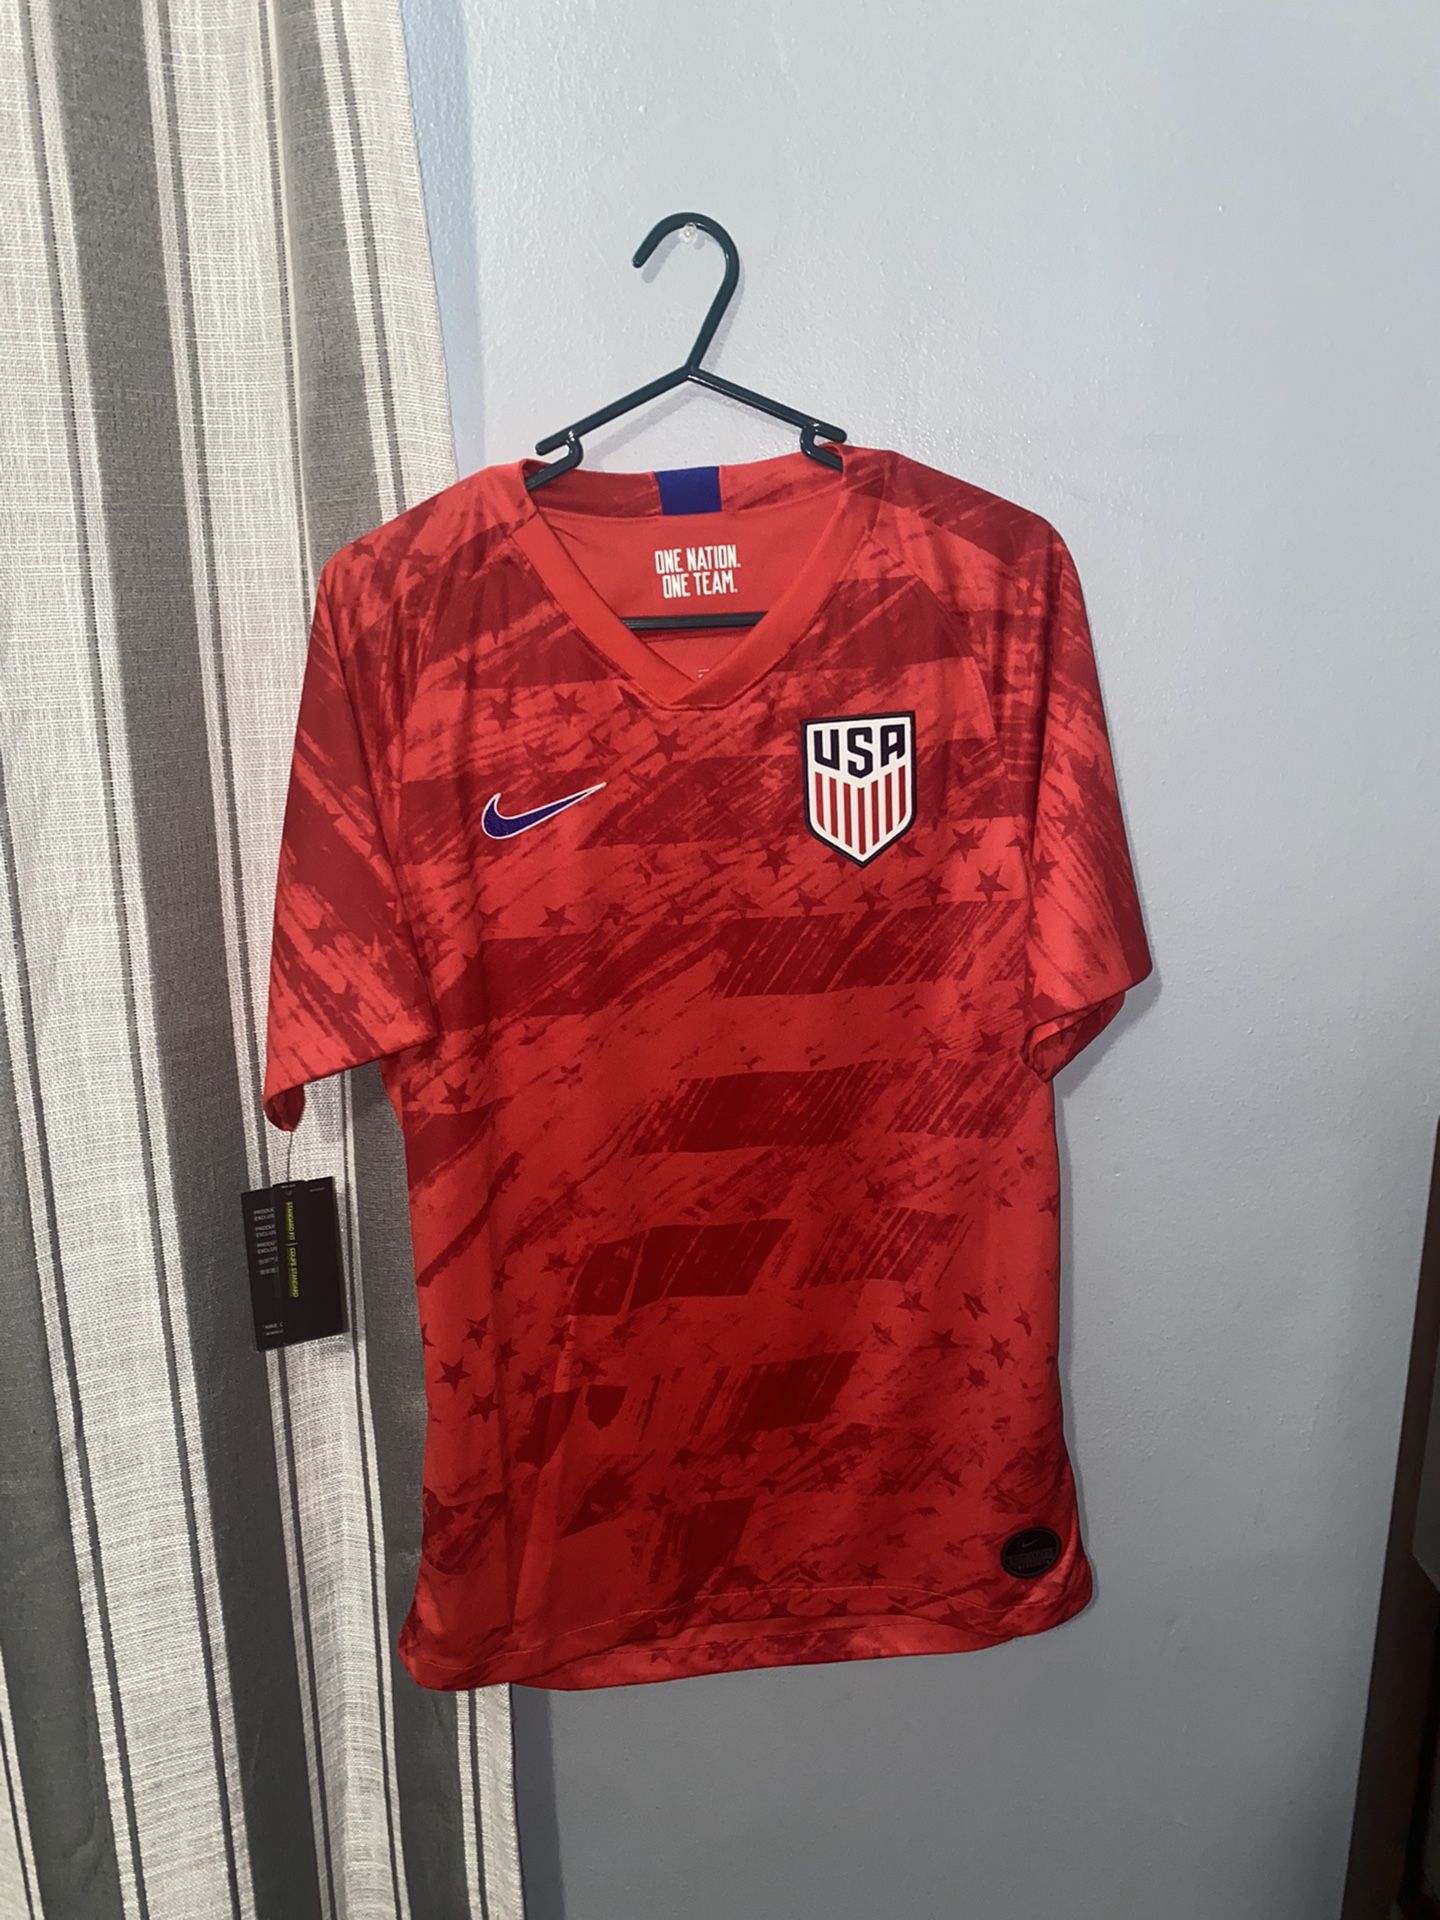 USA Soccer Jersey Size “S”